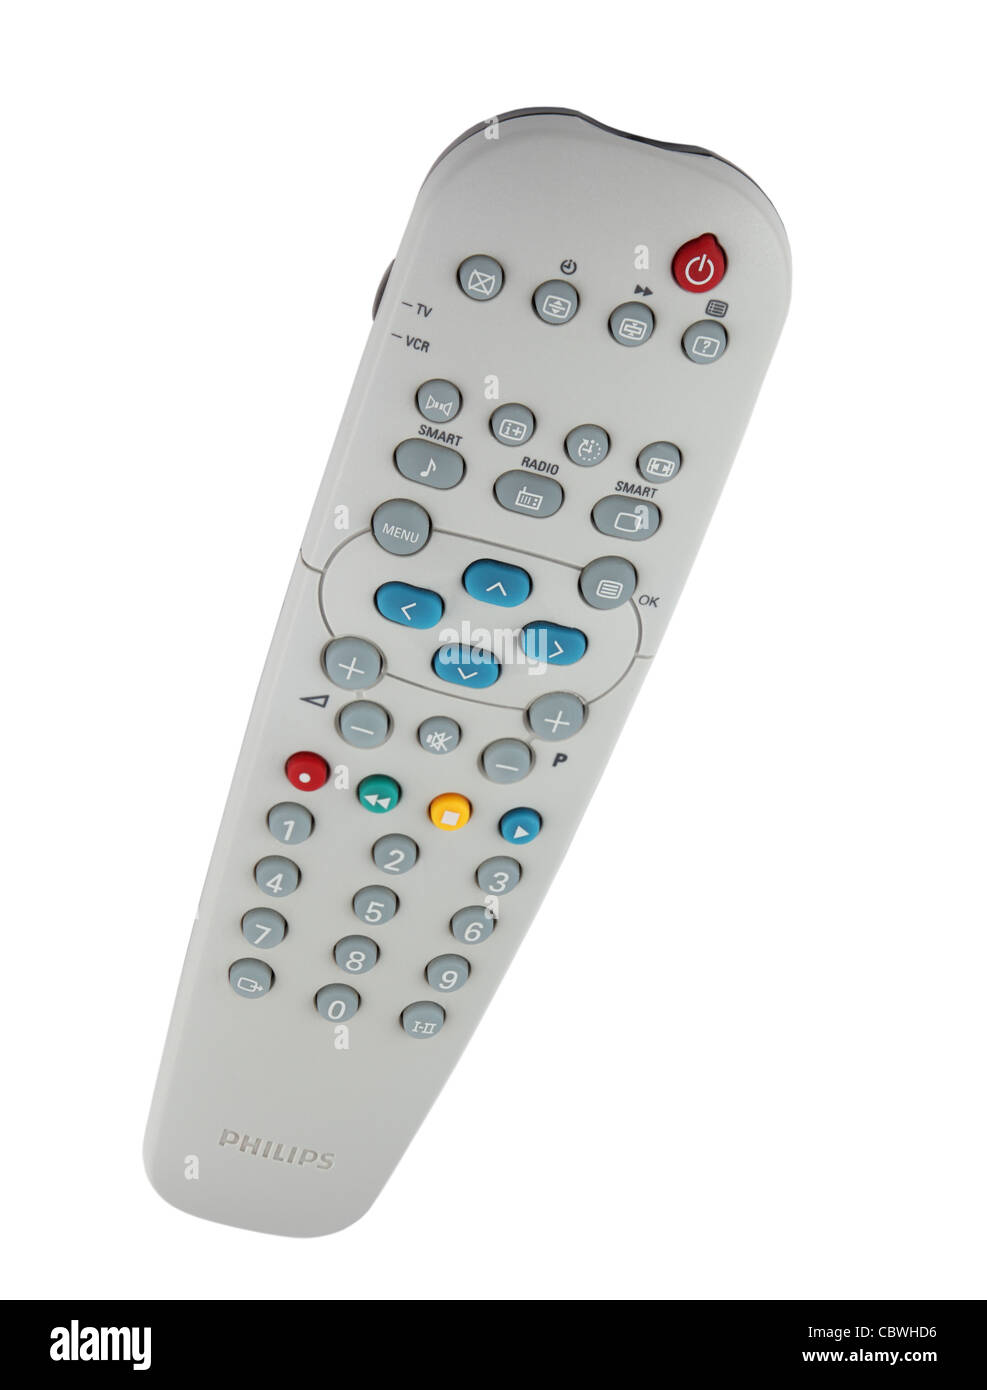 Un dispositif de télécommande TV Philips isolé sur fond blanc Photo Stock -  Alamy